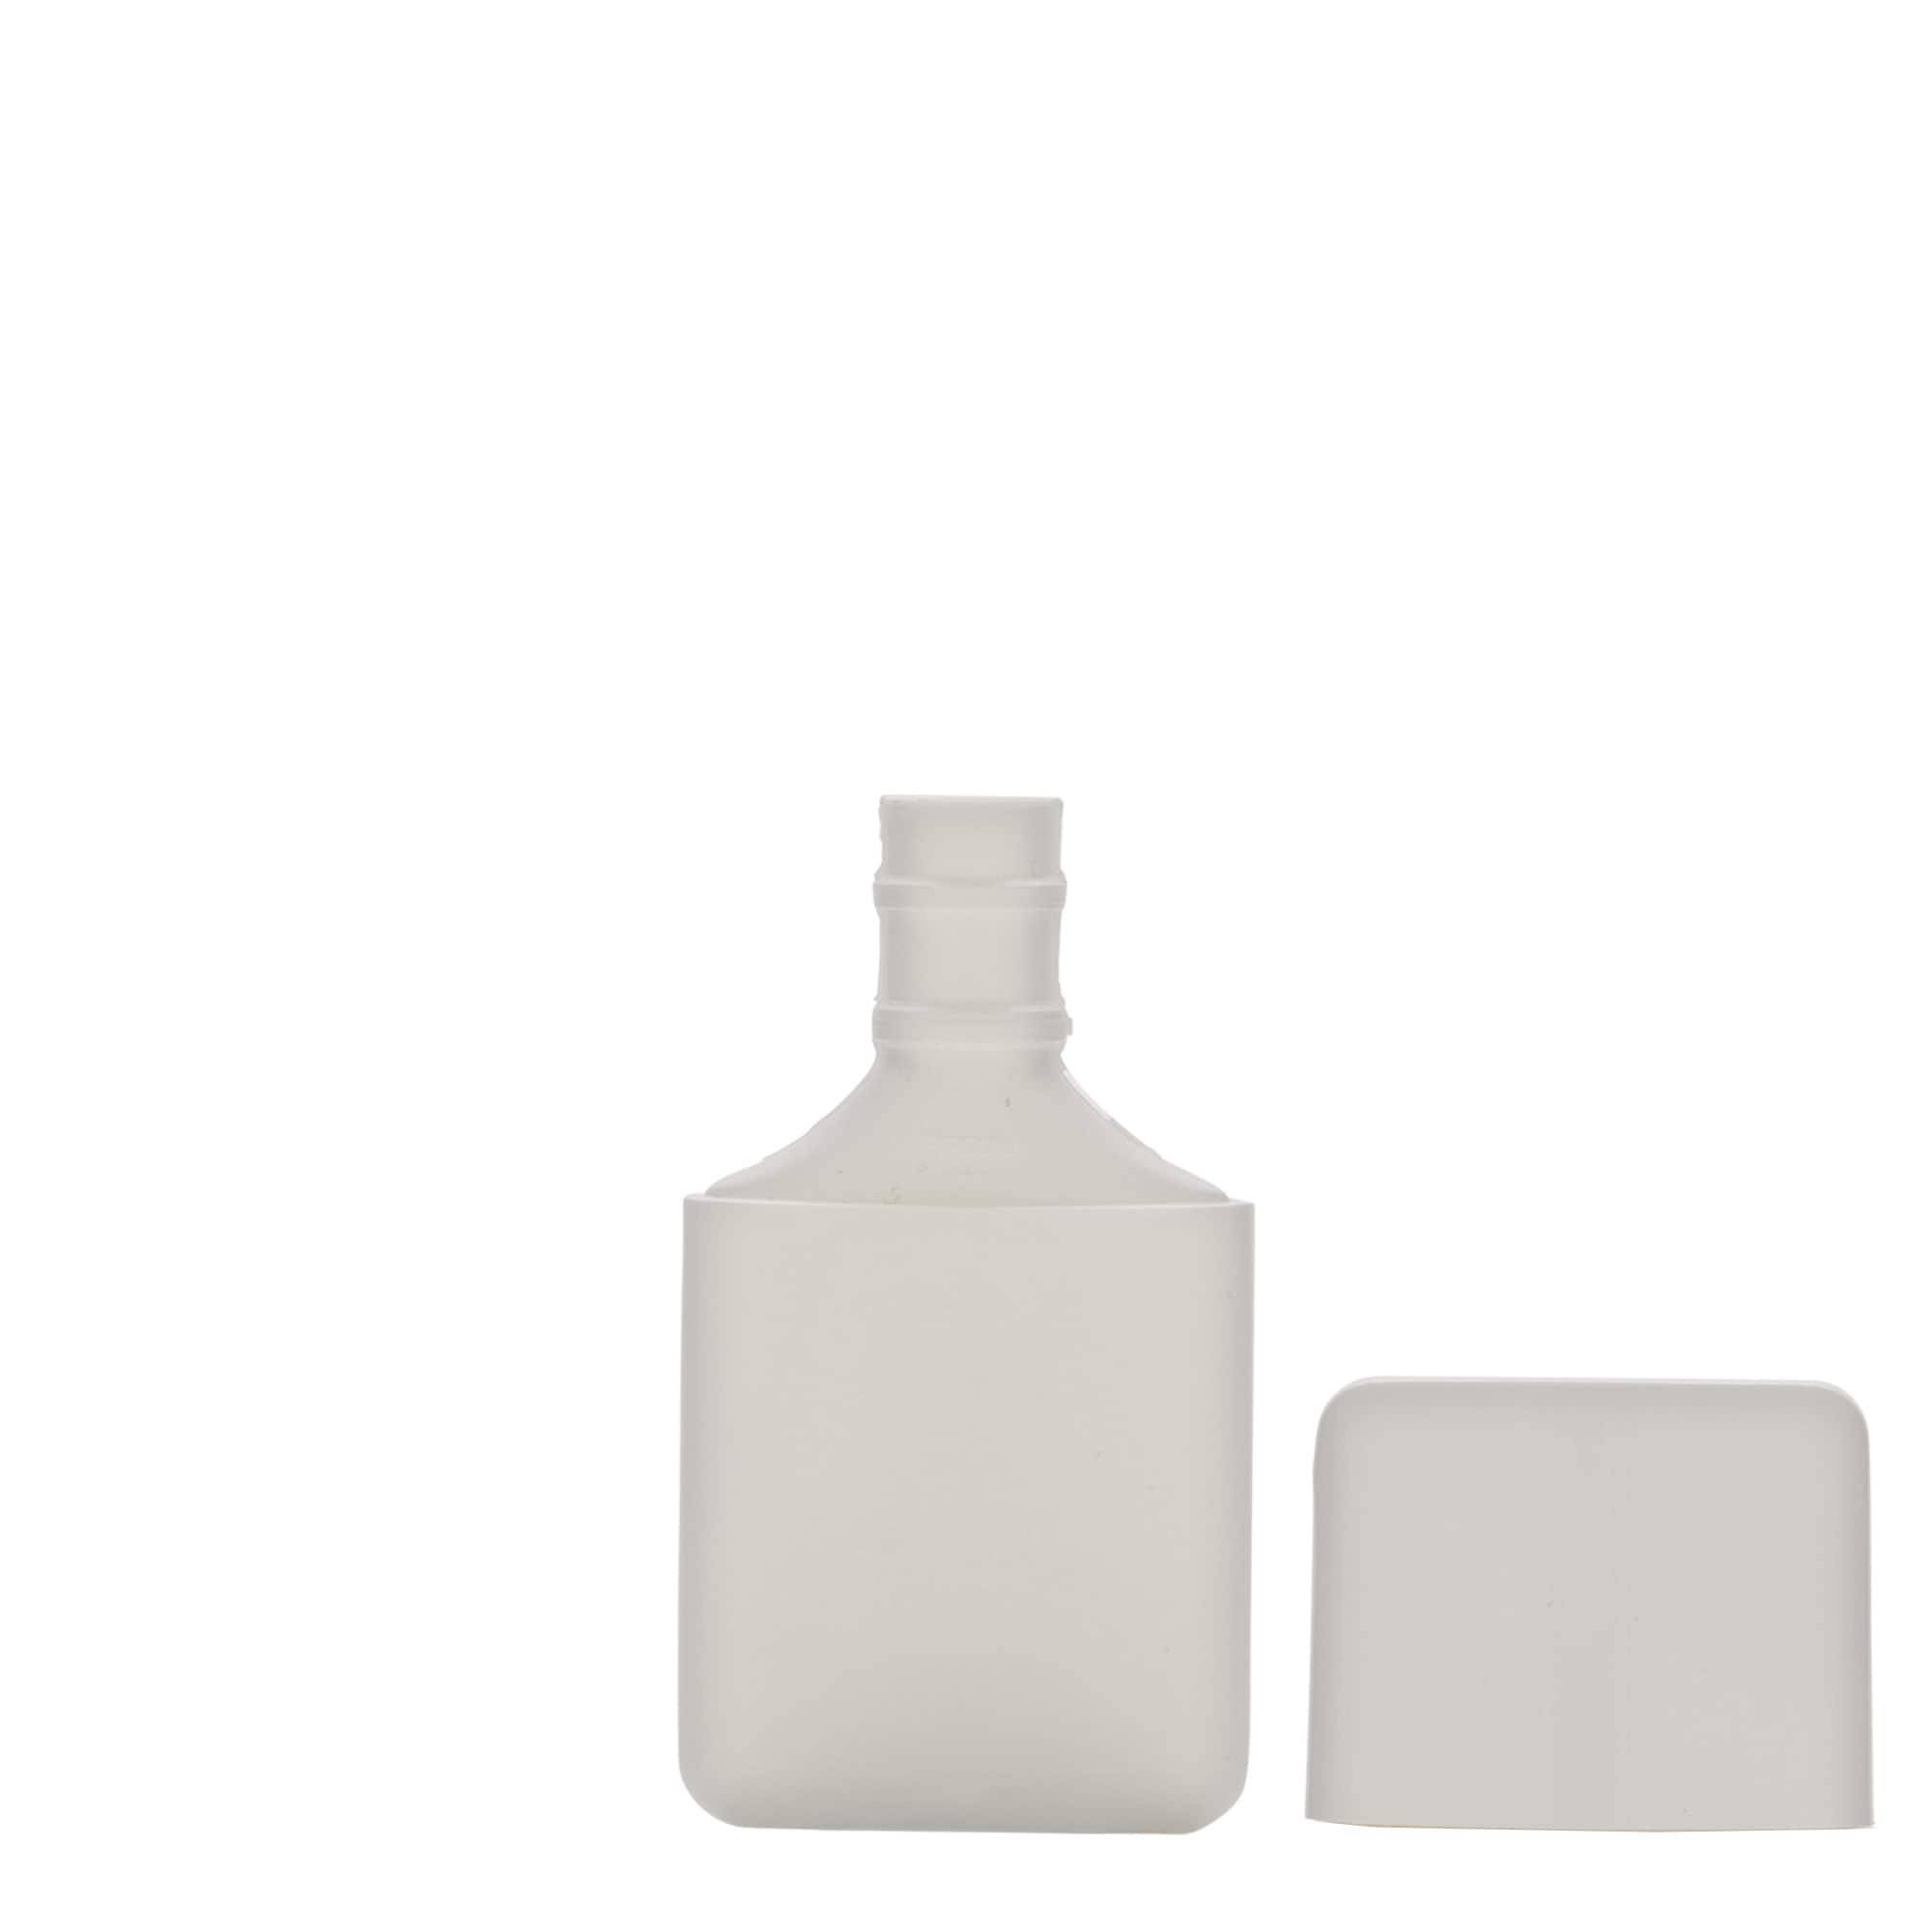 30 ml butelka tubka, owalna, tworzywo sztuczne HDPE, kolor biały, zamknięcie: zakrętka